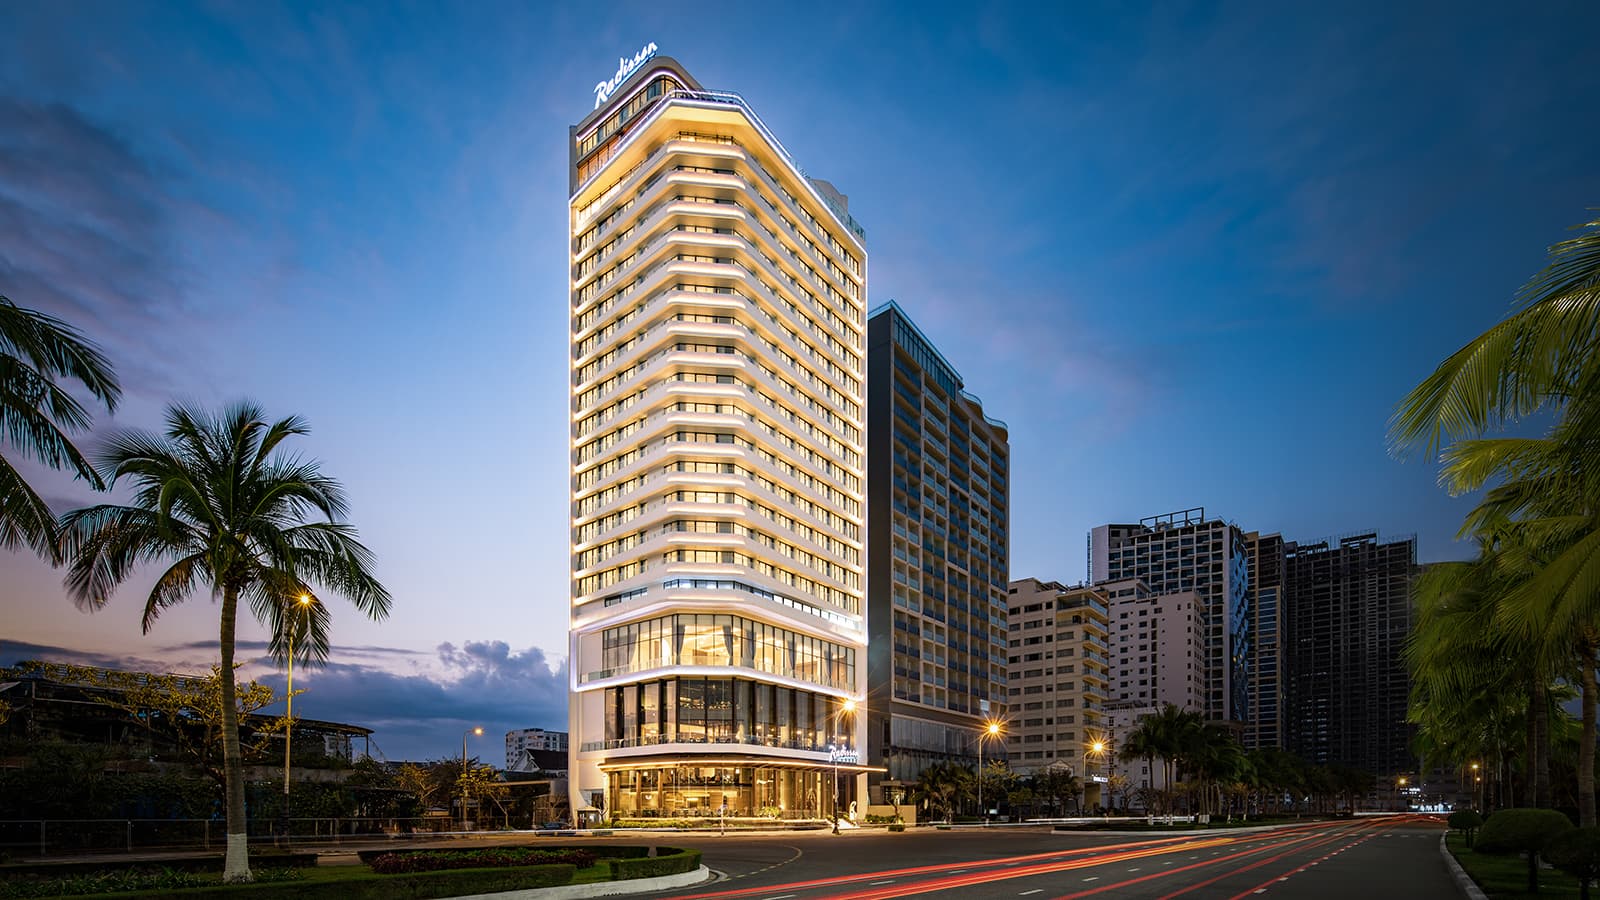 Radisson Hotel Danang chính thức mở cửa đón khách tại thành phố biển Đà Nẵng